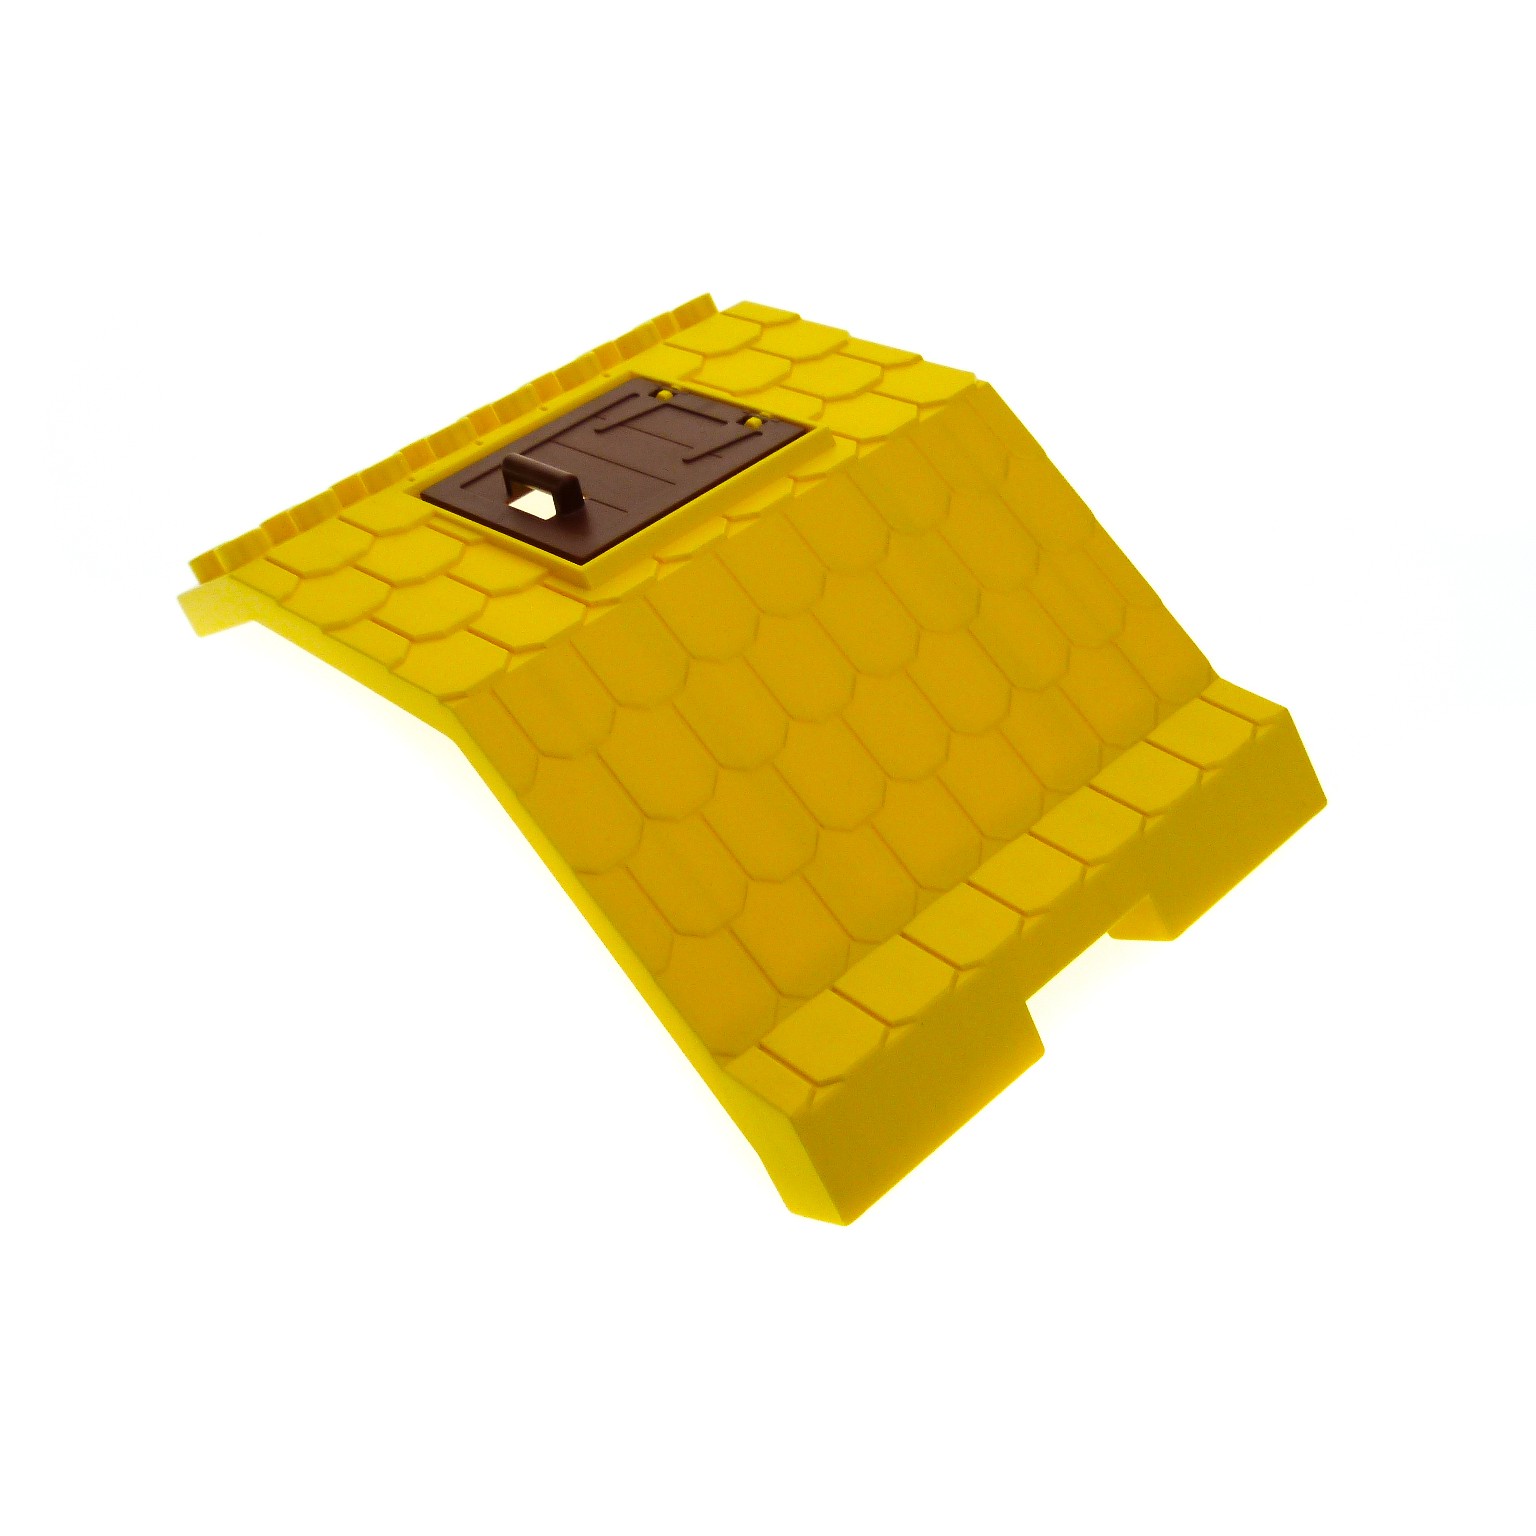 1 x Lego Duplo Dach B-Ware abgenutzt gross rot 8x8x8 Tür Ausschnitt Haus Bauernh 